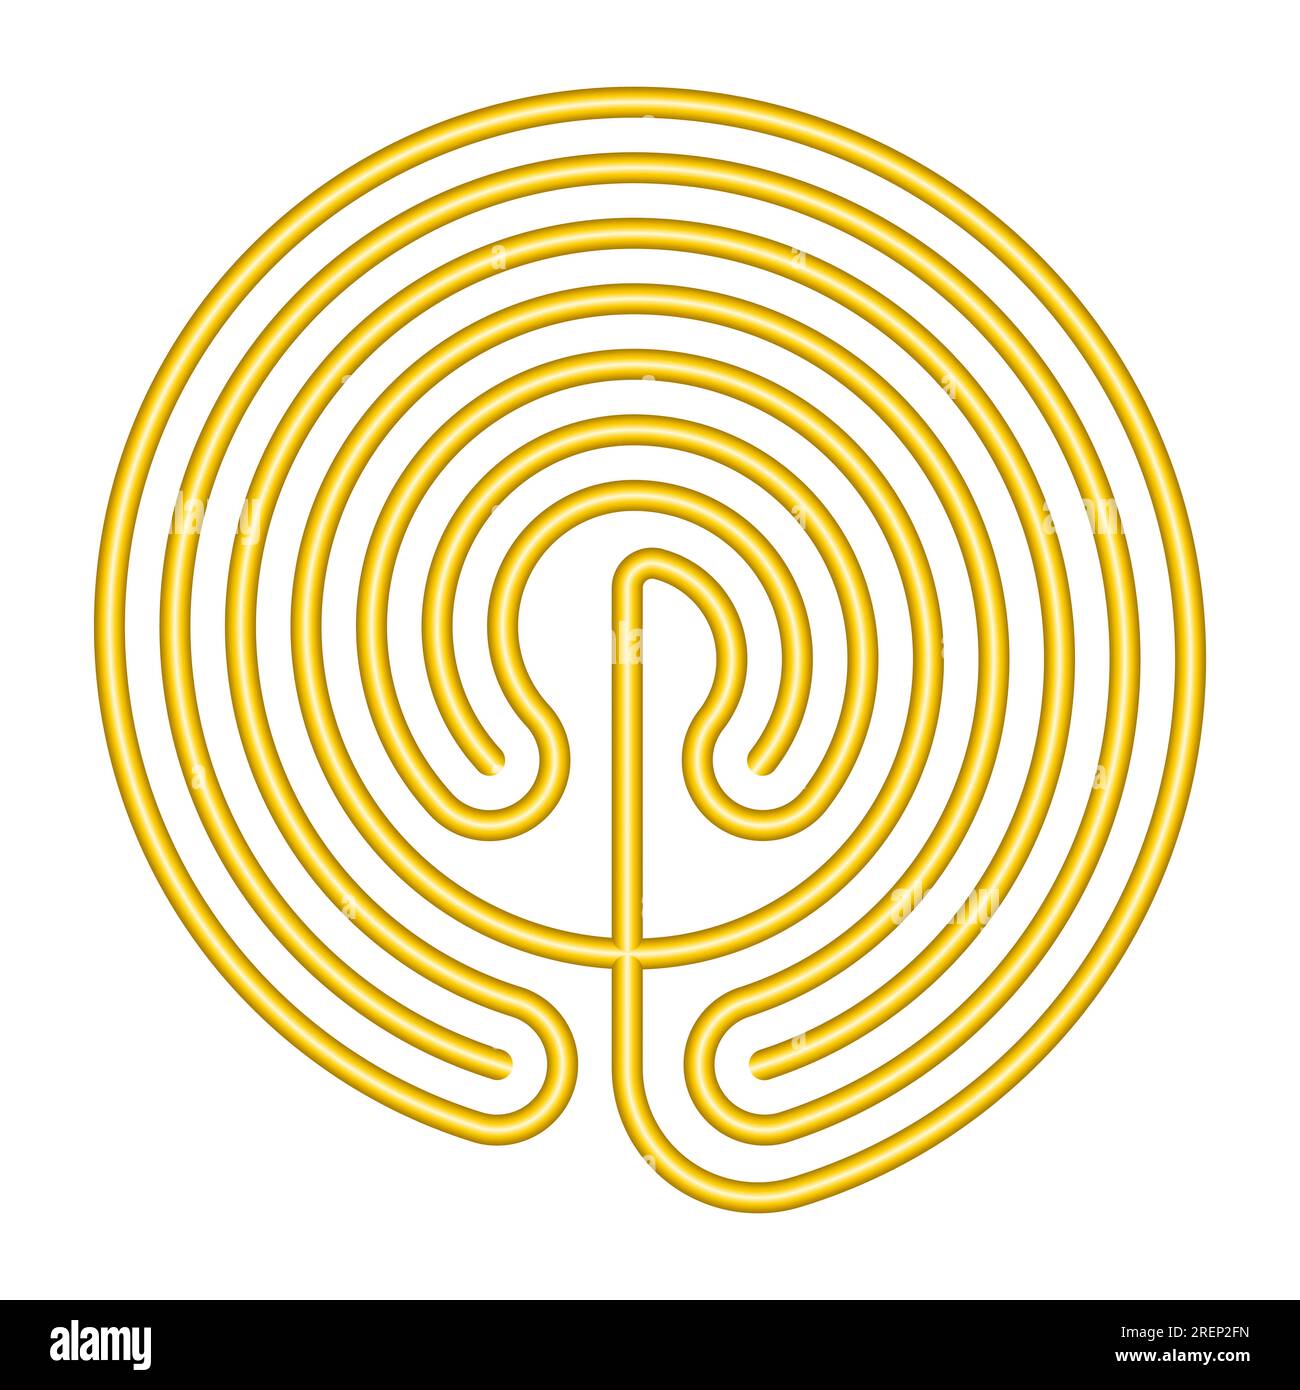 Labyrinthe crétoise en forme de cercle, de couleur or et dans la conception classique d'un chemin unique en 7 cours comme représenté sur les pièces de monnaie de Knossos. Banque D'Images